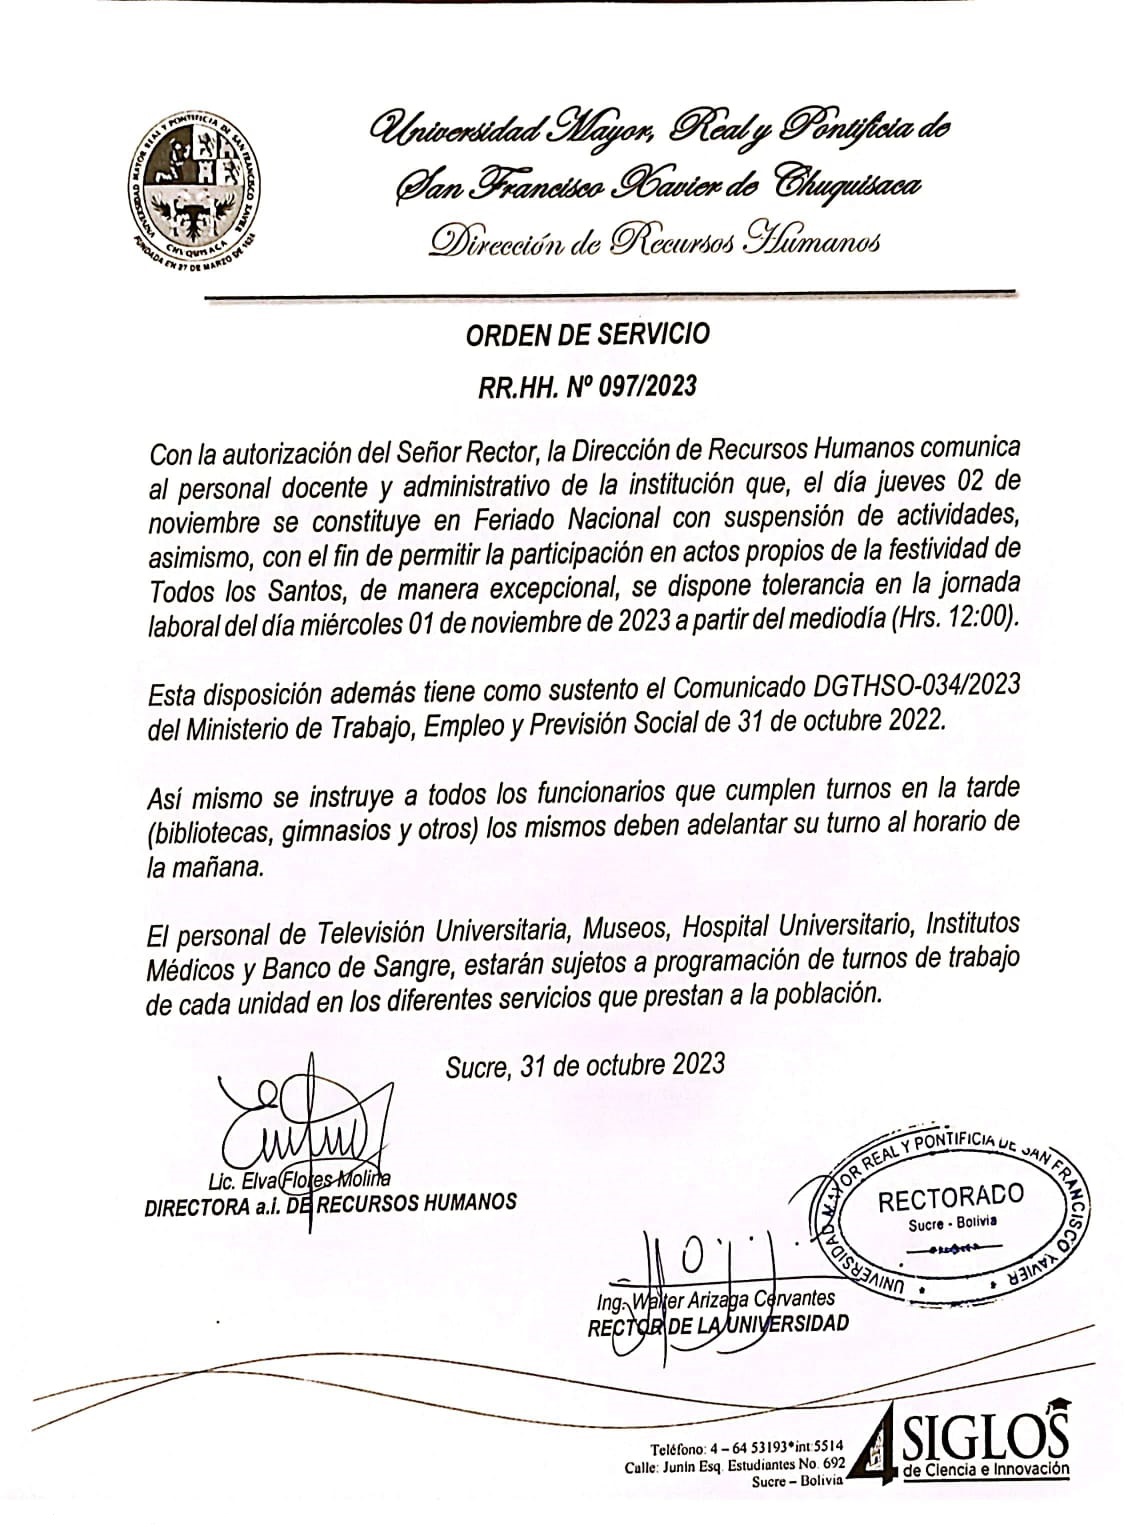 ORDEN DE SERVICIO RR.HH. Nº 097/2023, FERIADO NACIONAL DE TODOS LOS SANTOS.